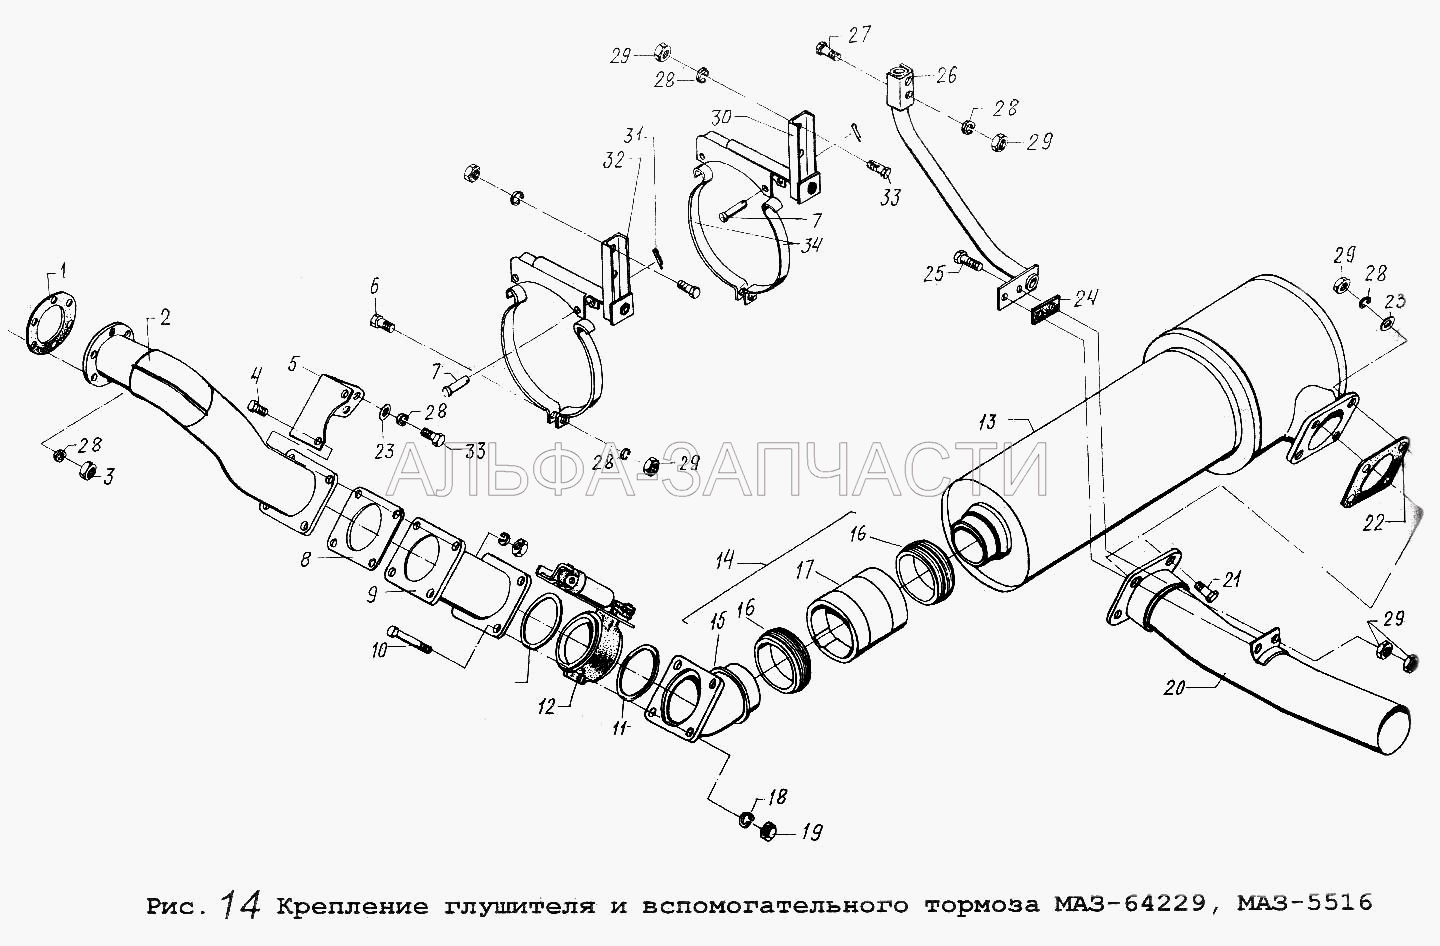 Крепление глушителя и вспомогательного тормоза МАЗ-64229, МАЗ-5516 (64227-1203842 Втулка) 